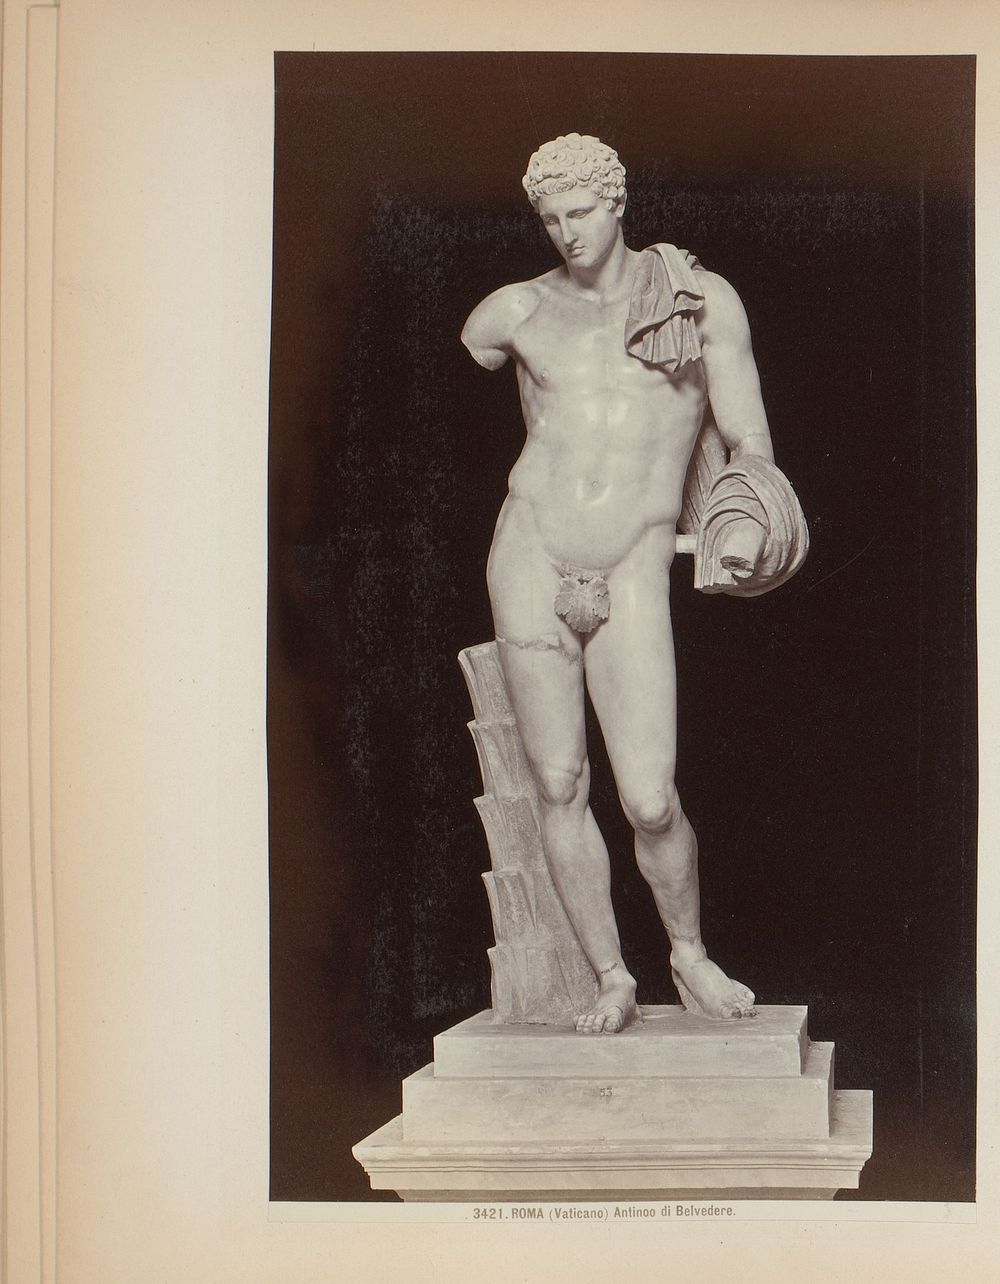 Sculptuur van Hermes van Belvedere in de Vaticaanse Musea te Rome, Italië (1870 - 1881) by Giacomo Brogi and anonymous